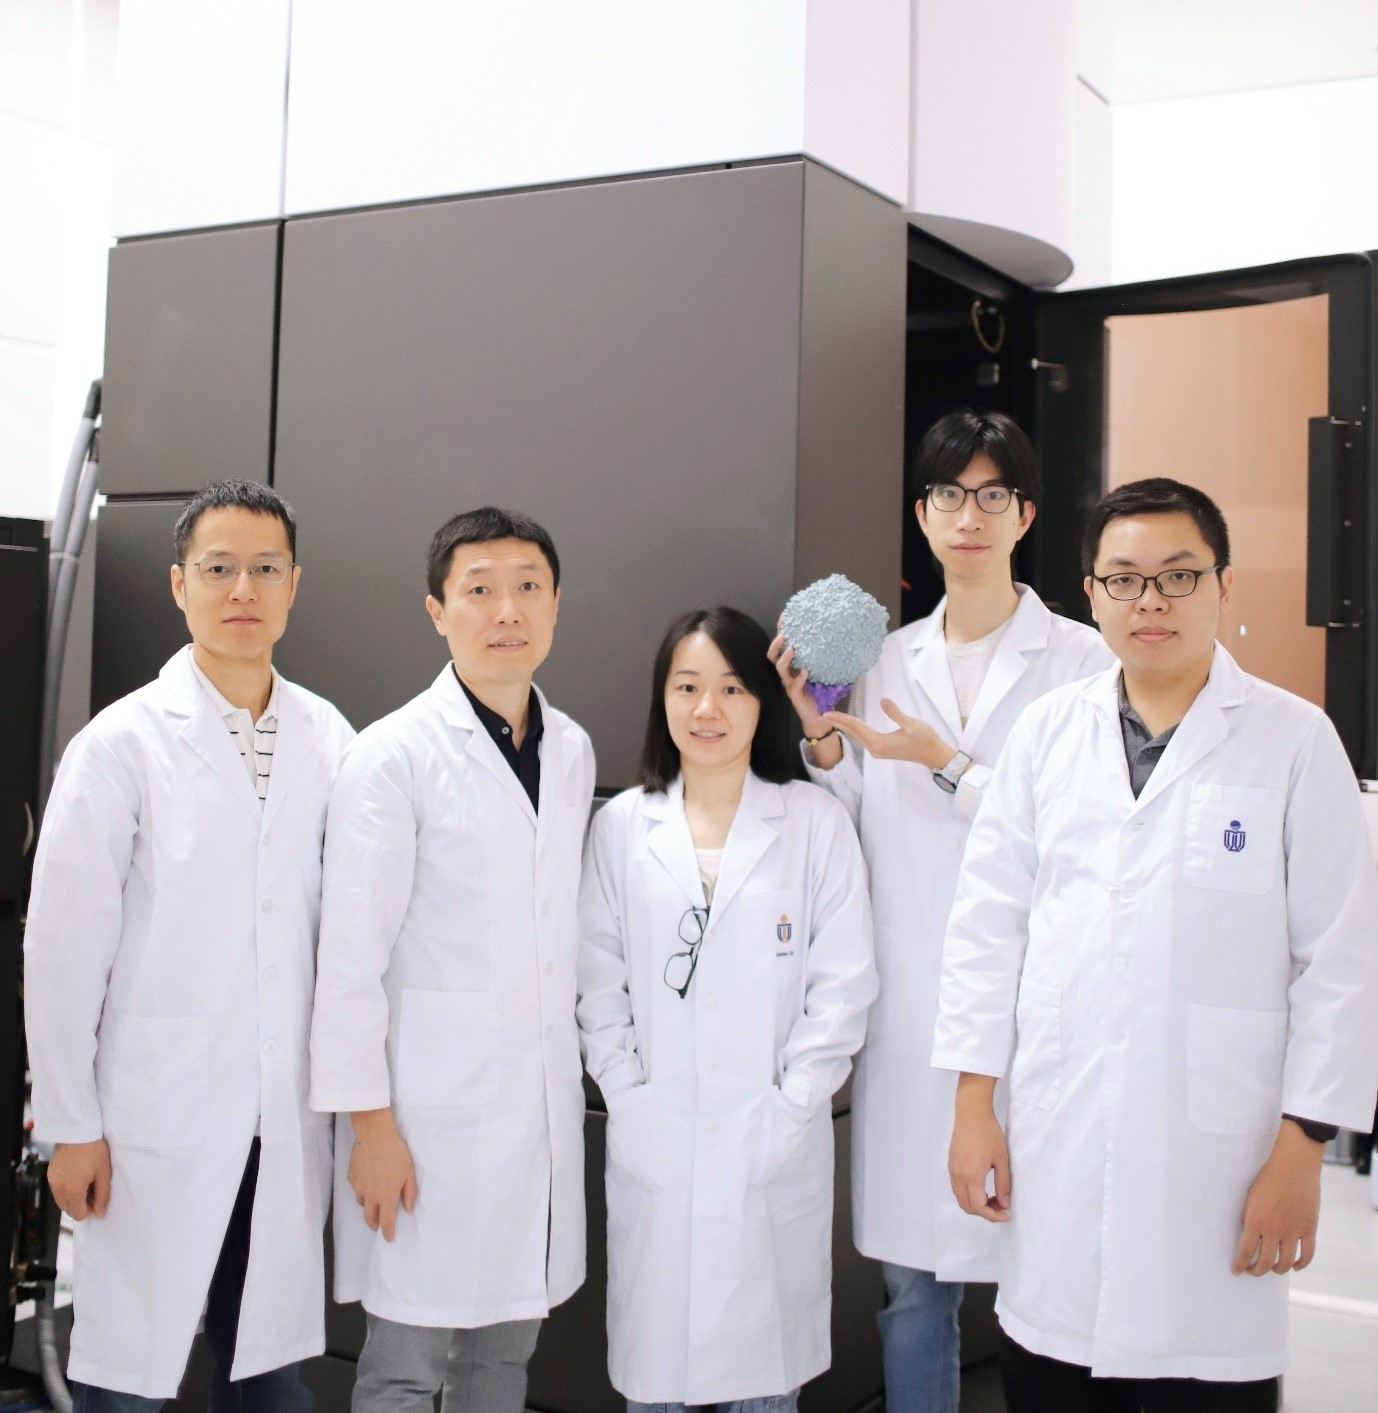 研究團隊的合影。從左到右分別是黨尚宇教授、曾慶璐教授、蔡蘭蘭博士、劉航先生（手中拿著3D打印的藍藻病毒結構），以及肖詩維先生。